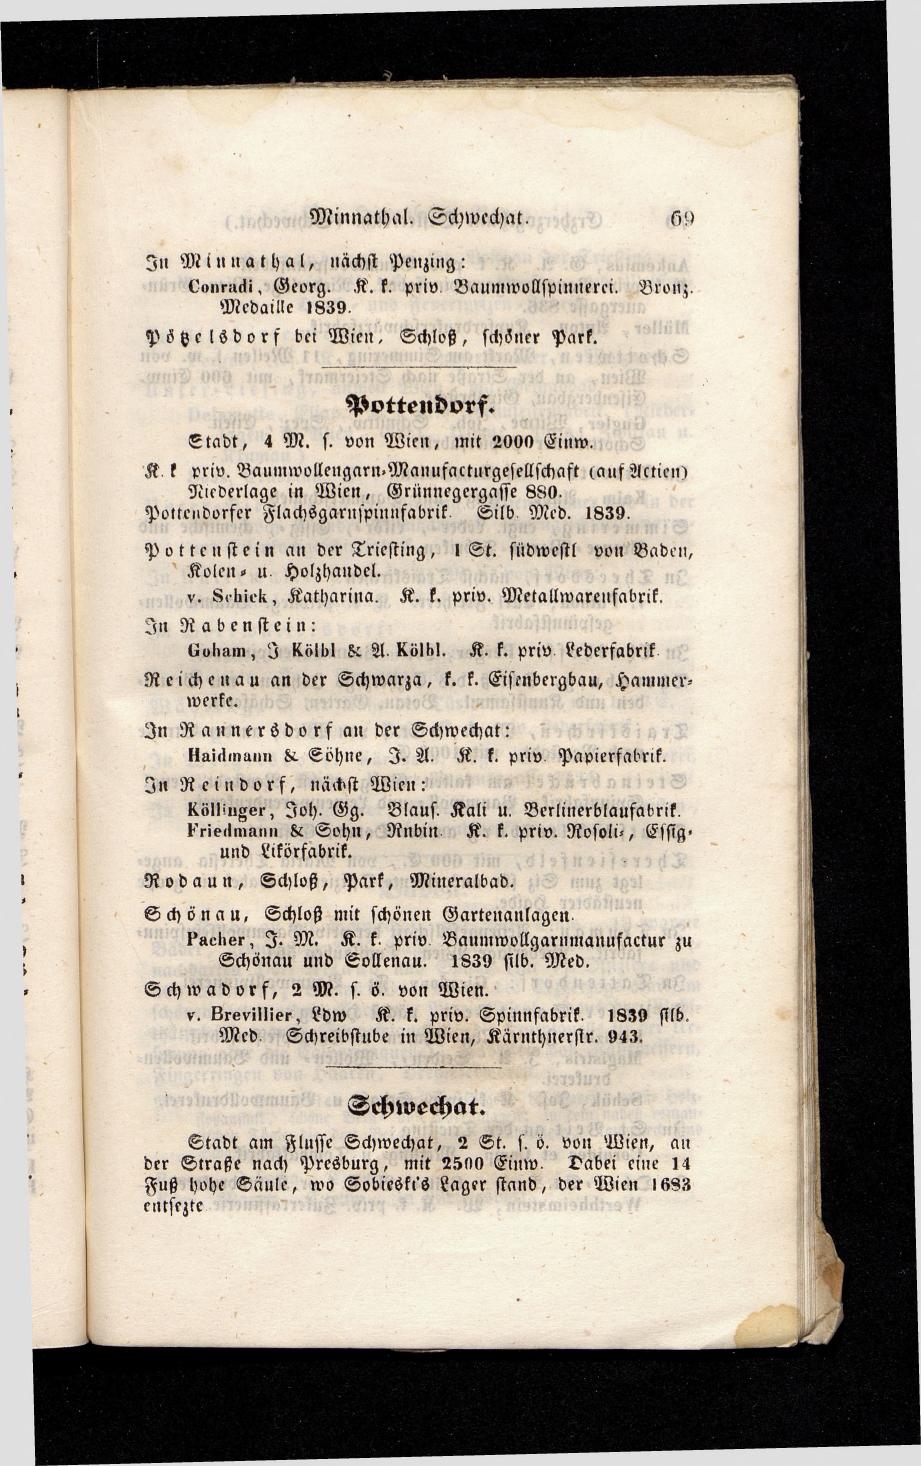 Grosses Adressbuch der Kaufleute. No. 13. Oesterreich ober u. unter der Enns 1844 - Seite 73